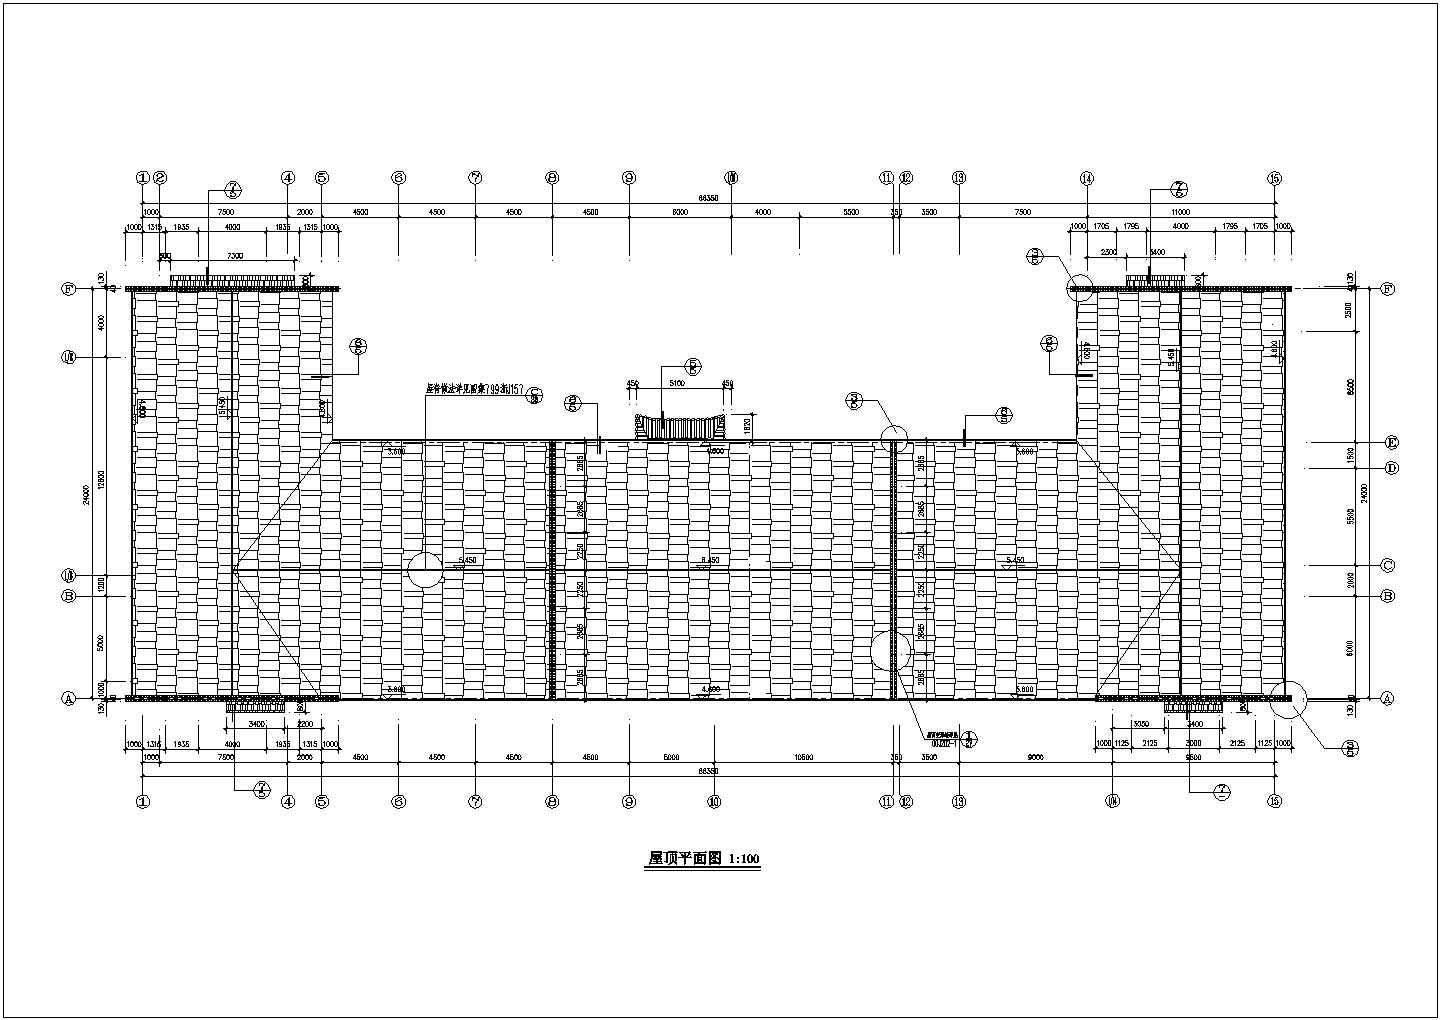 苏州某景区1300平米3层砖混结构观光餐厅全套建筑设计CAD图纸